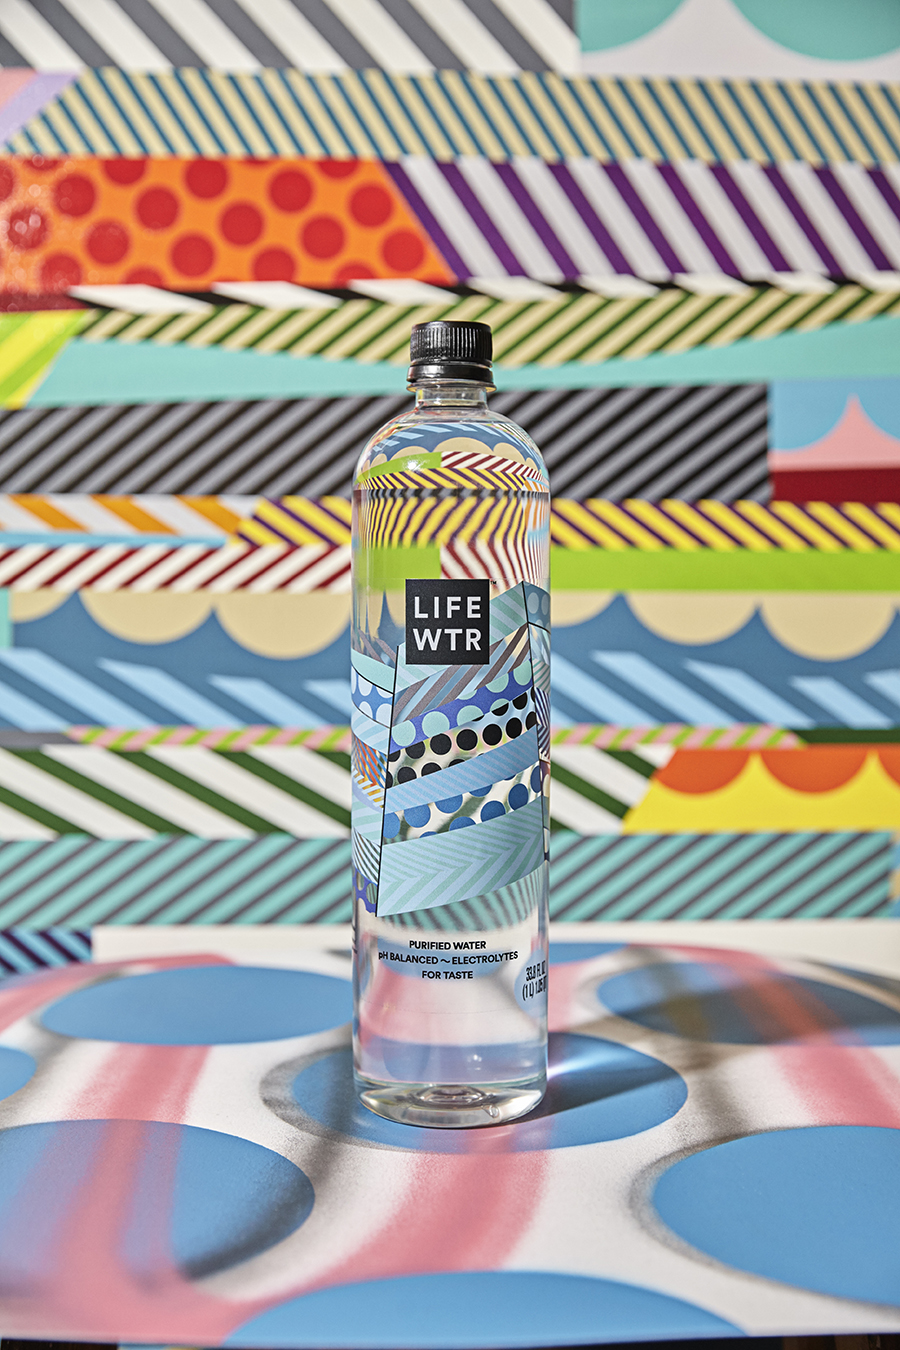 LIFE WTR 艺术型瓶贴纯净水包装设计